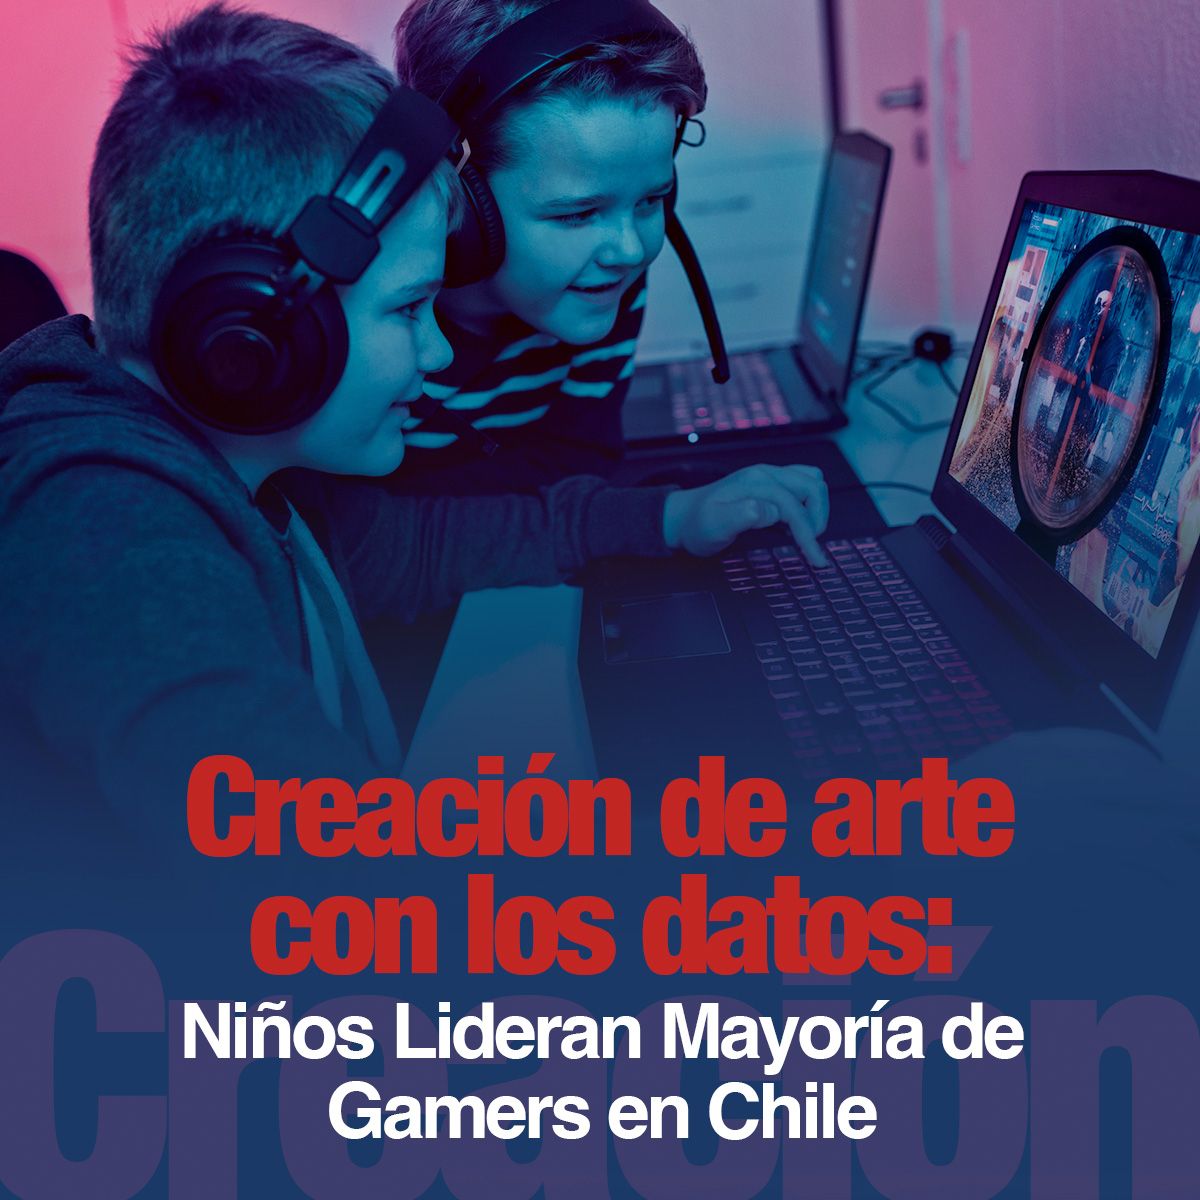 Niños Lideran Mayoría de Gamers en Chile